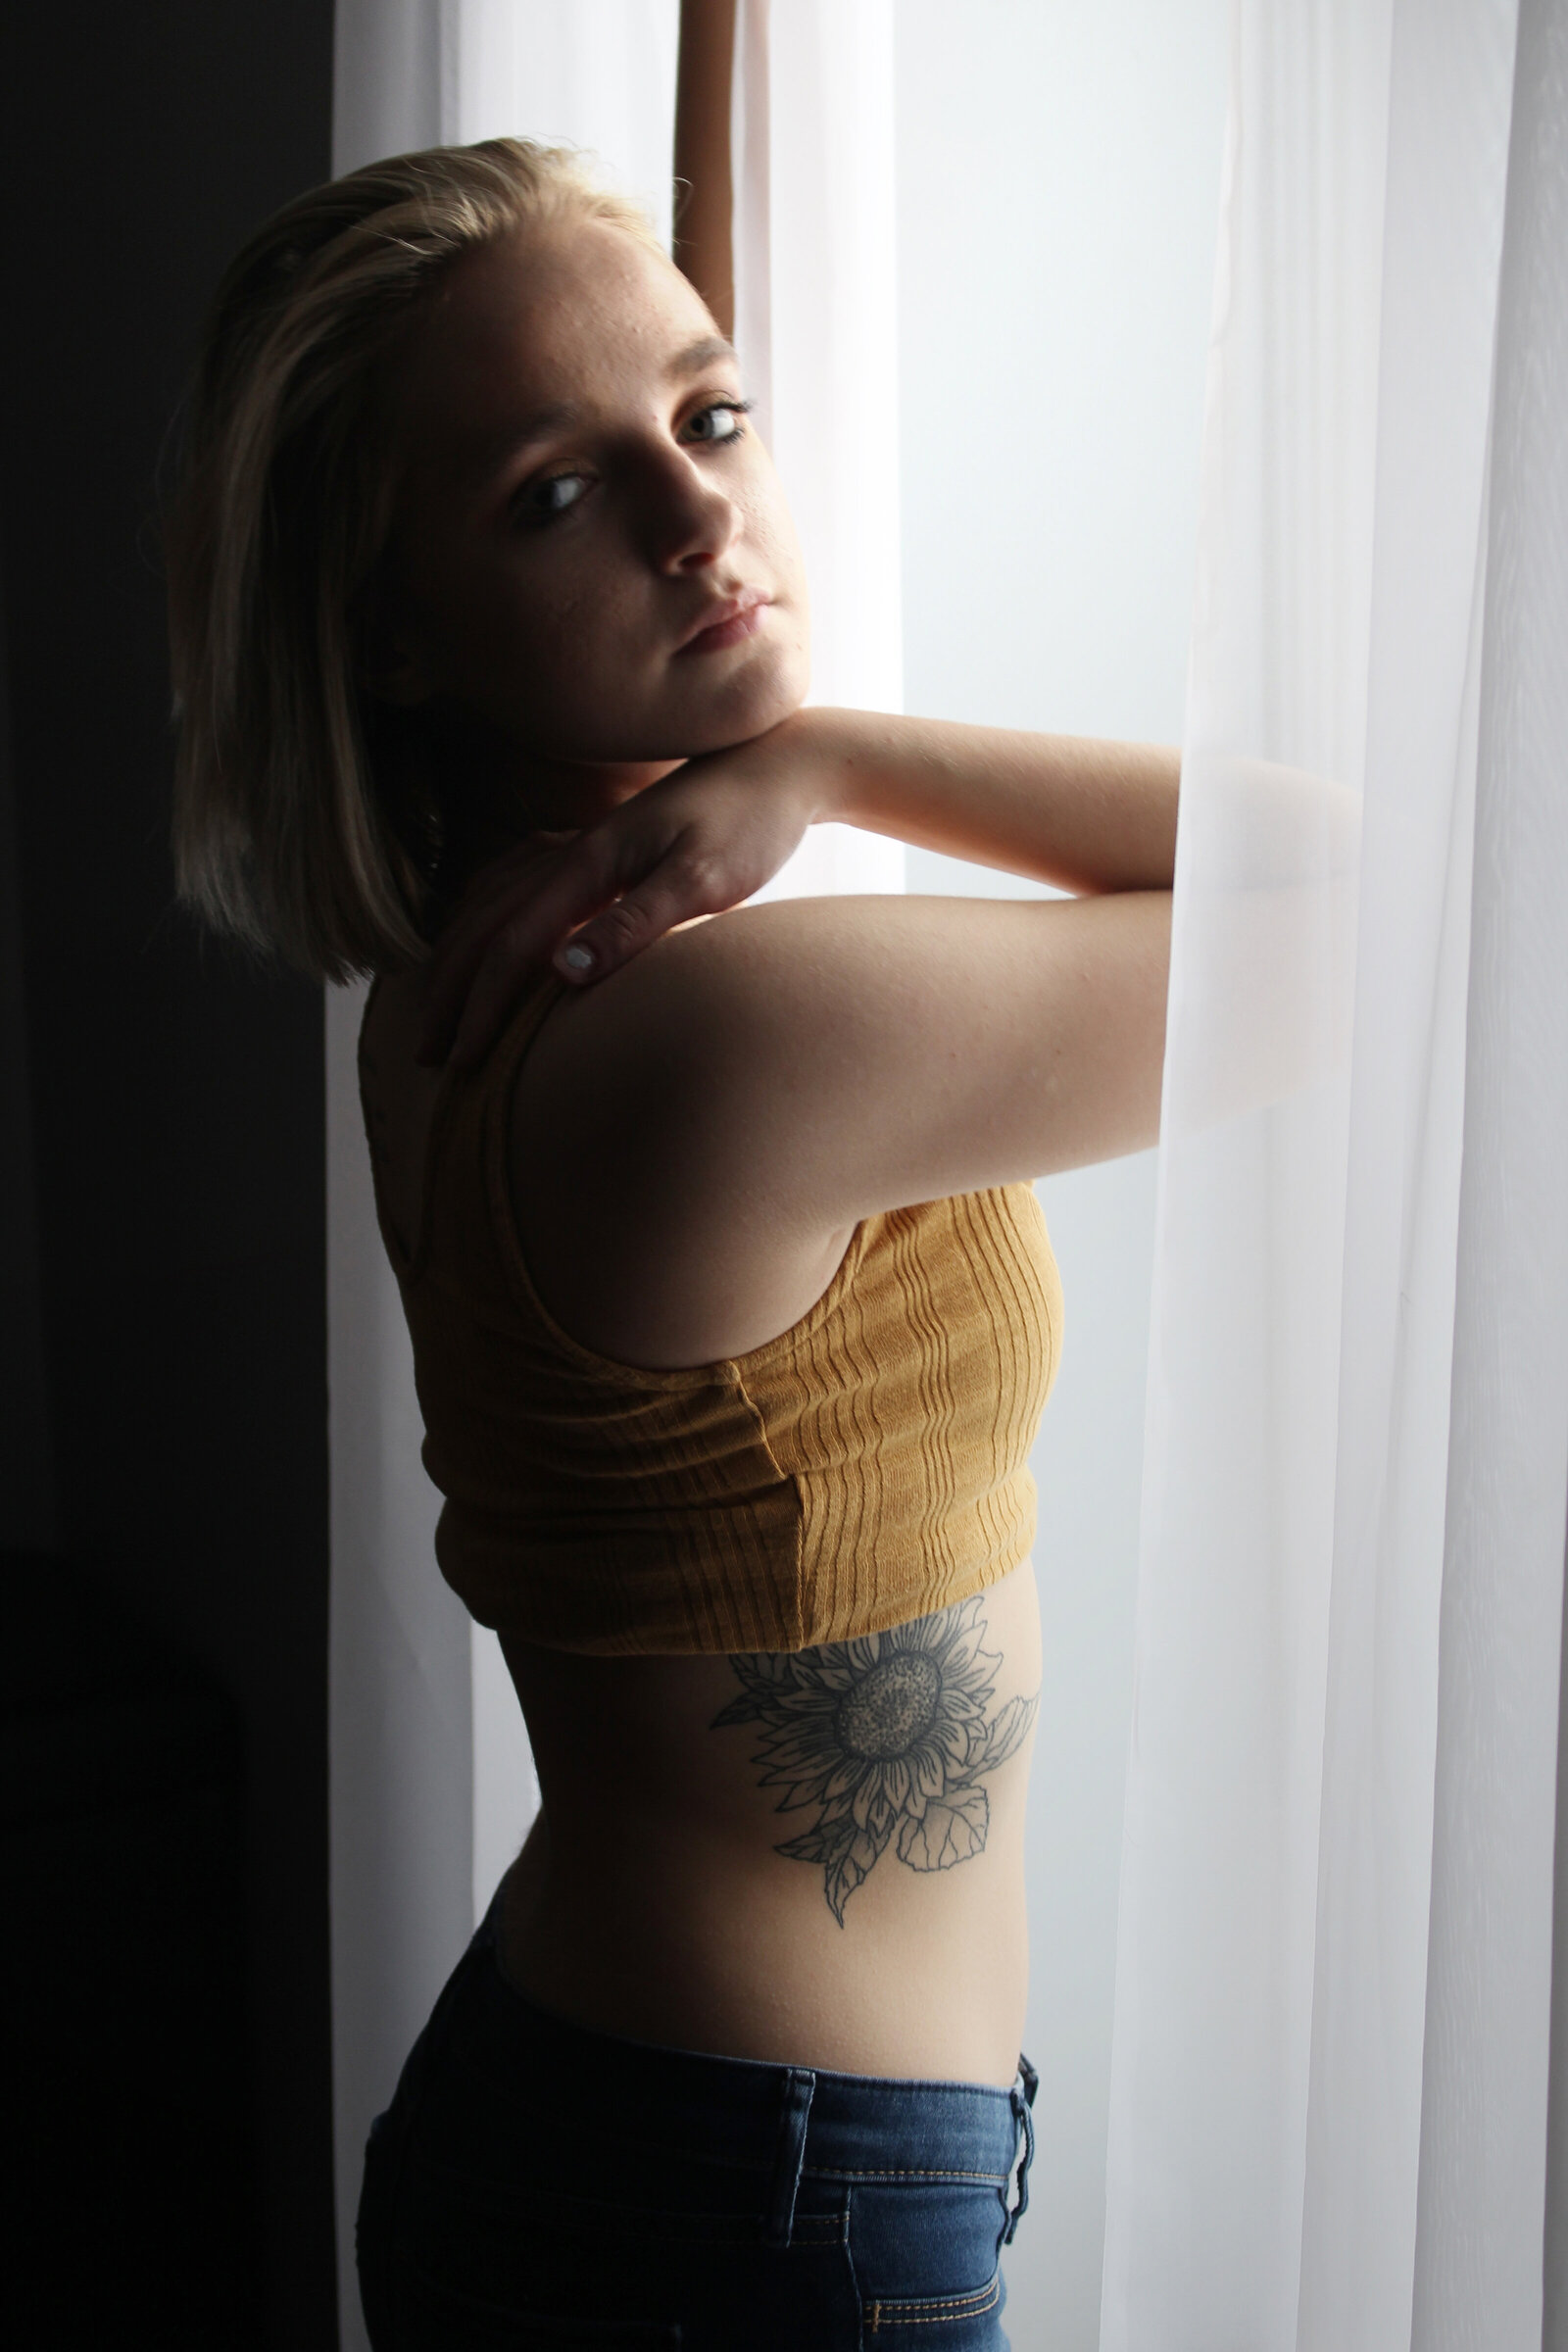 Tattoo, ribs, sunflower